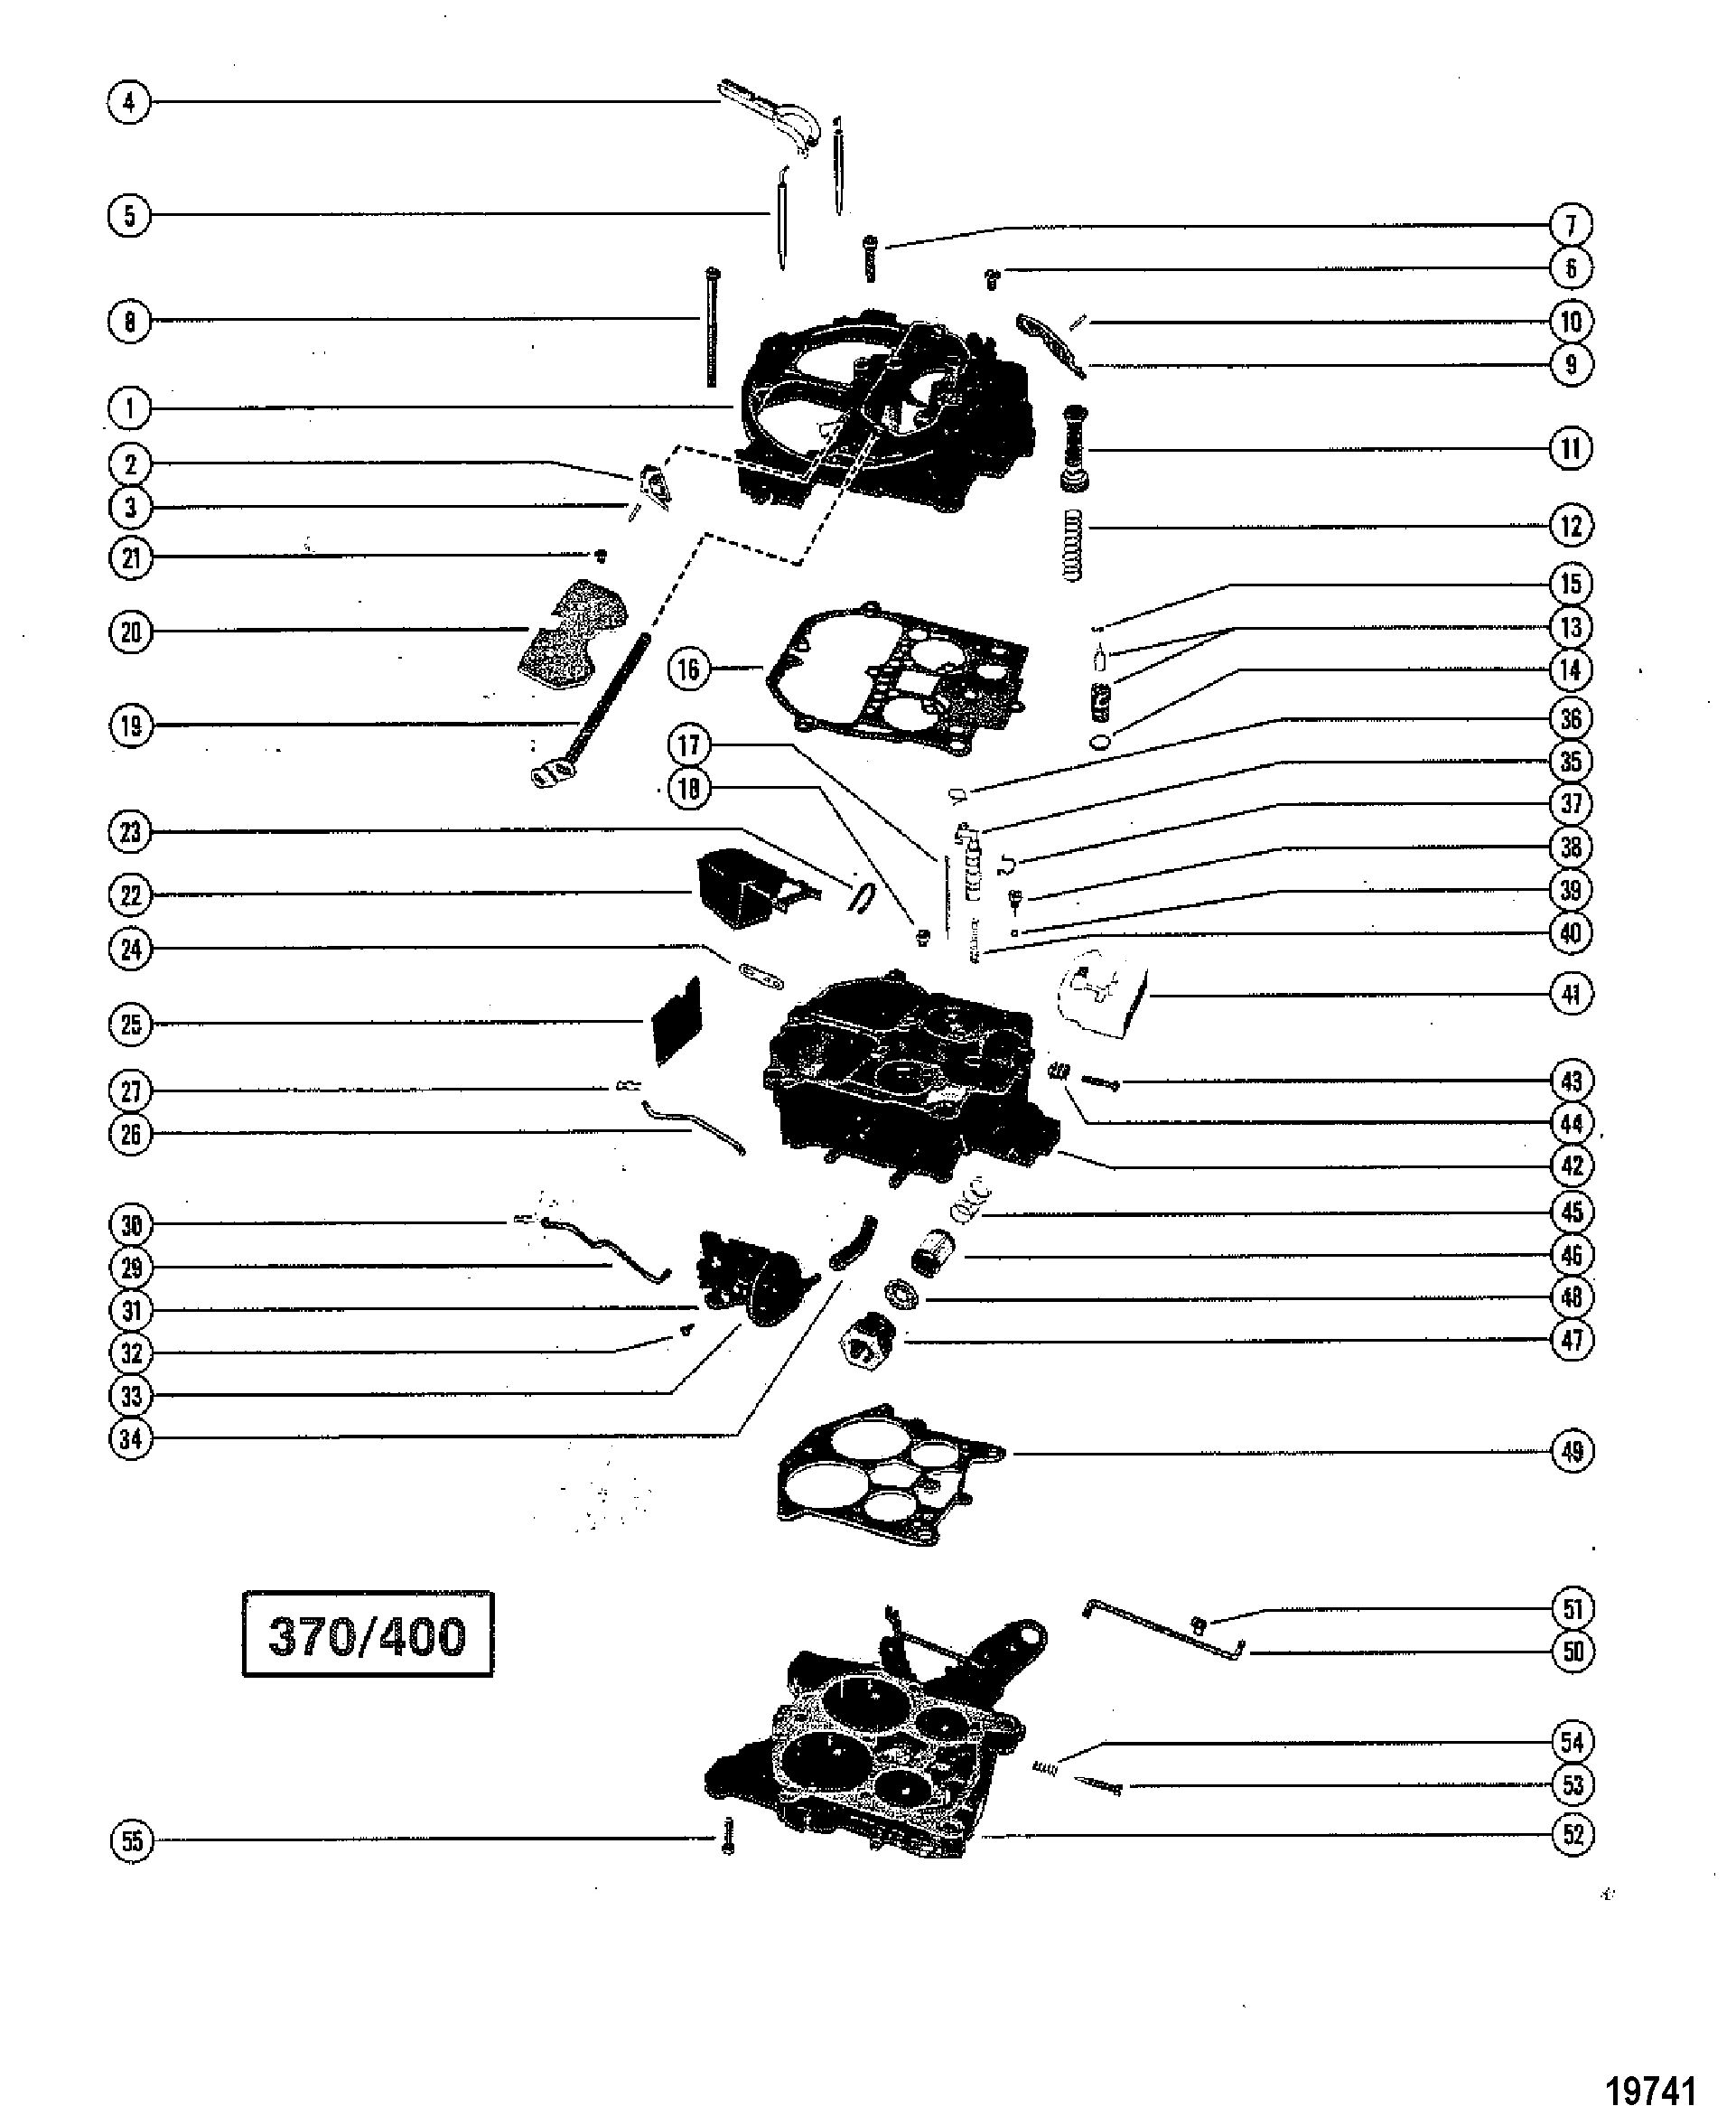 Carburetor Assembly(370/400)